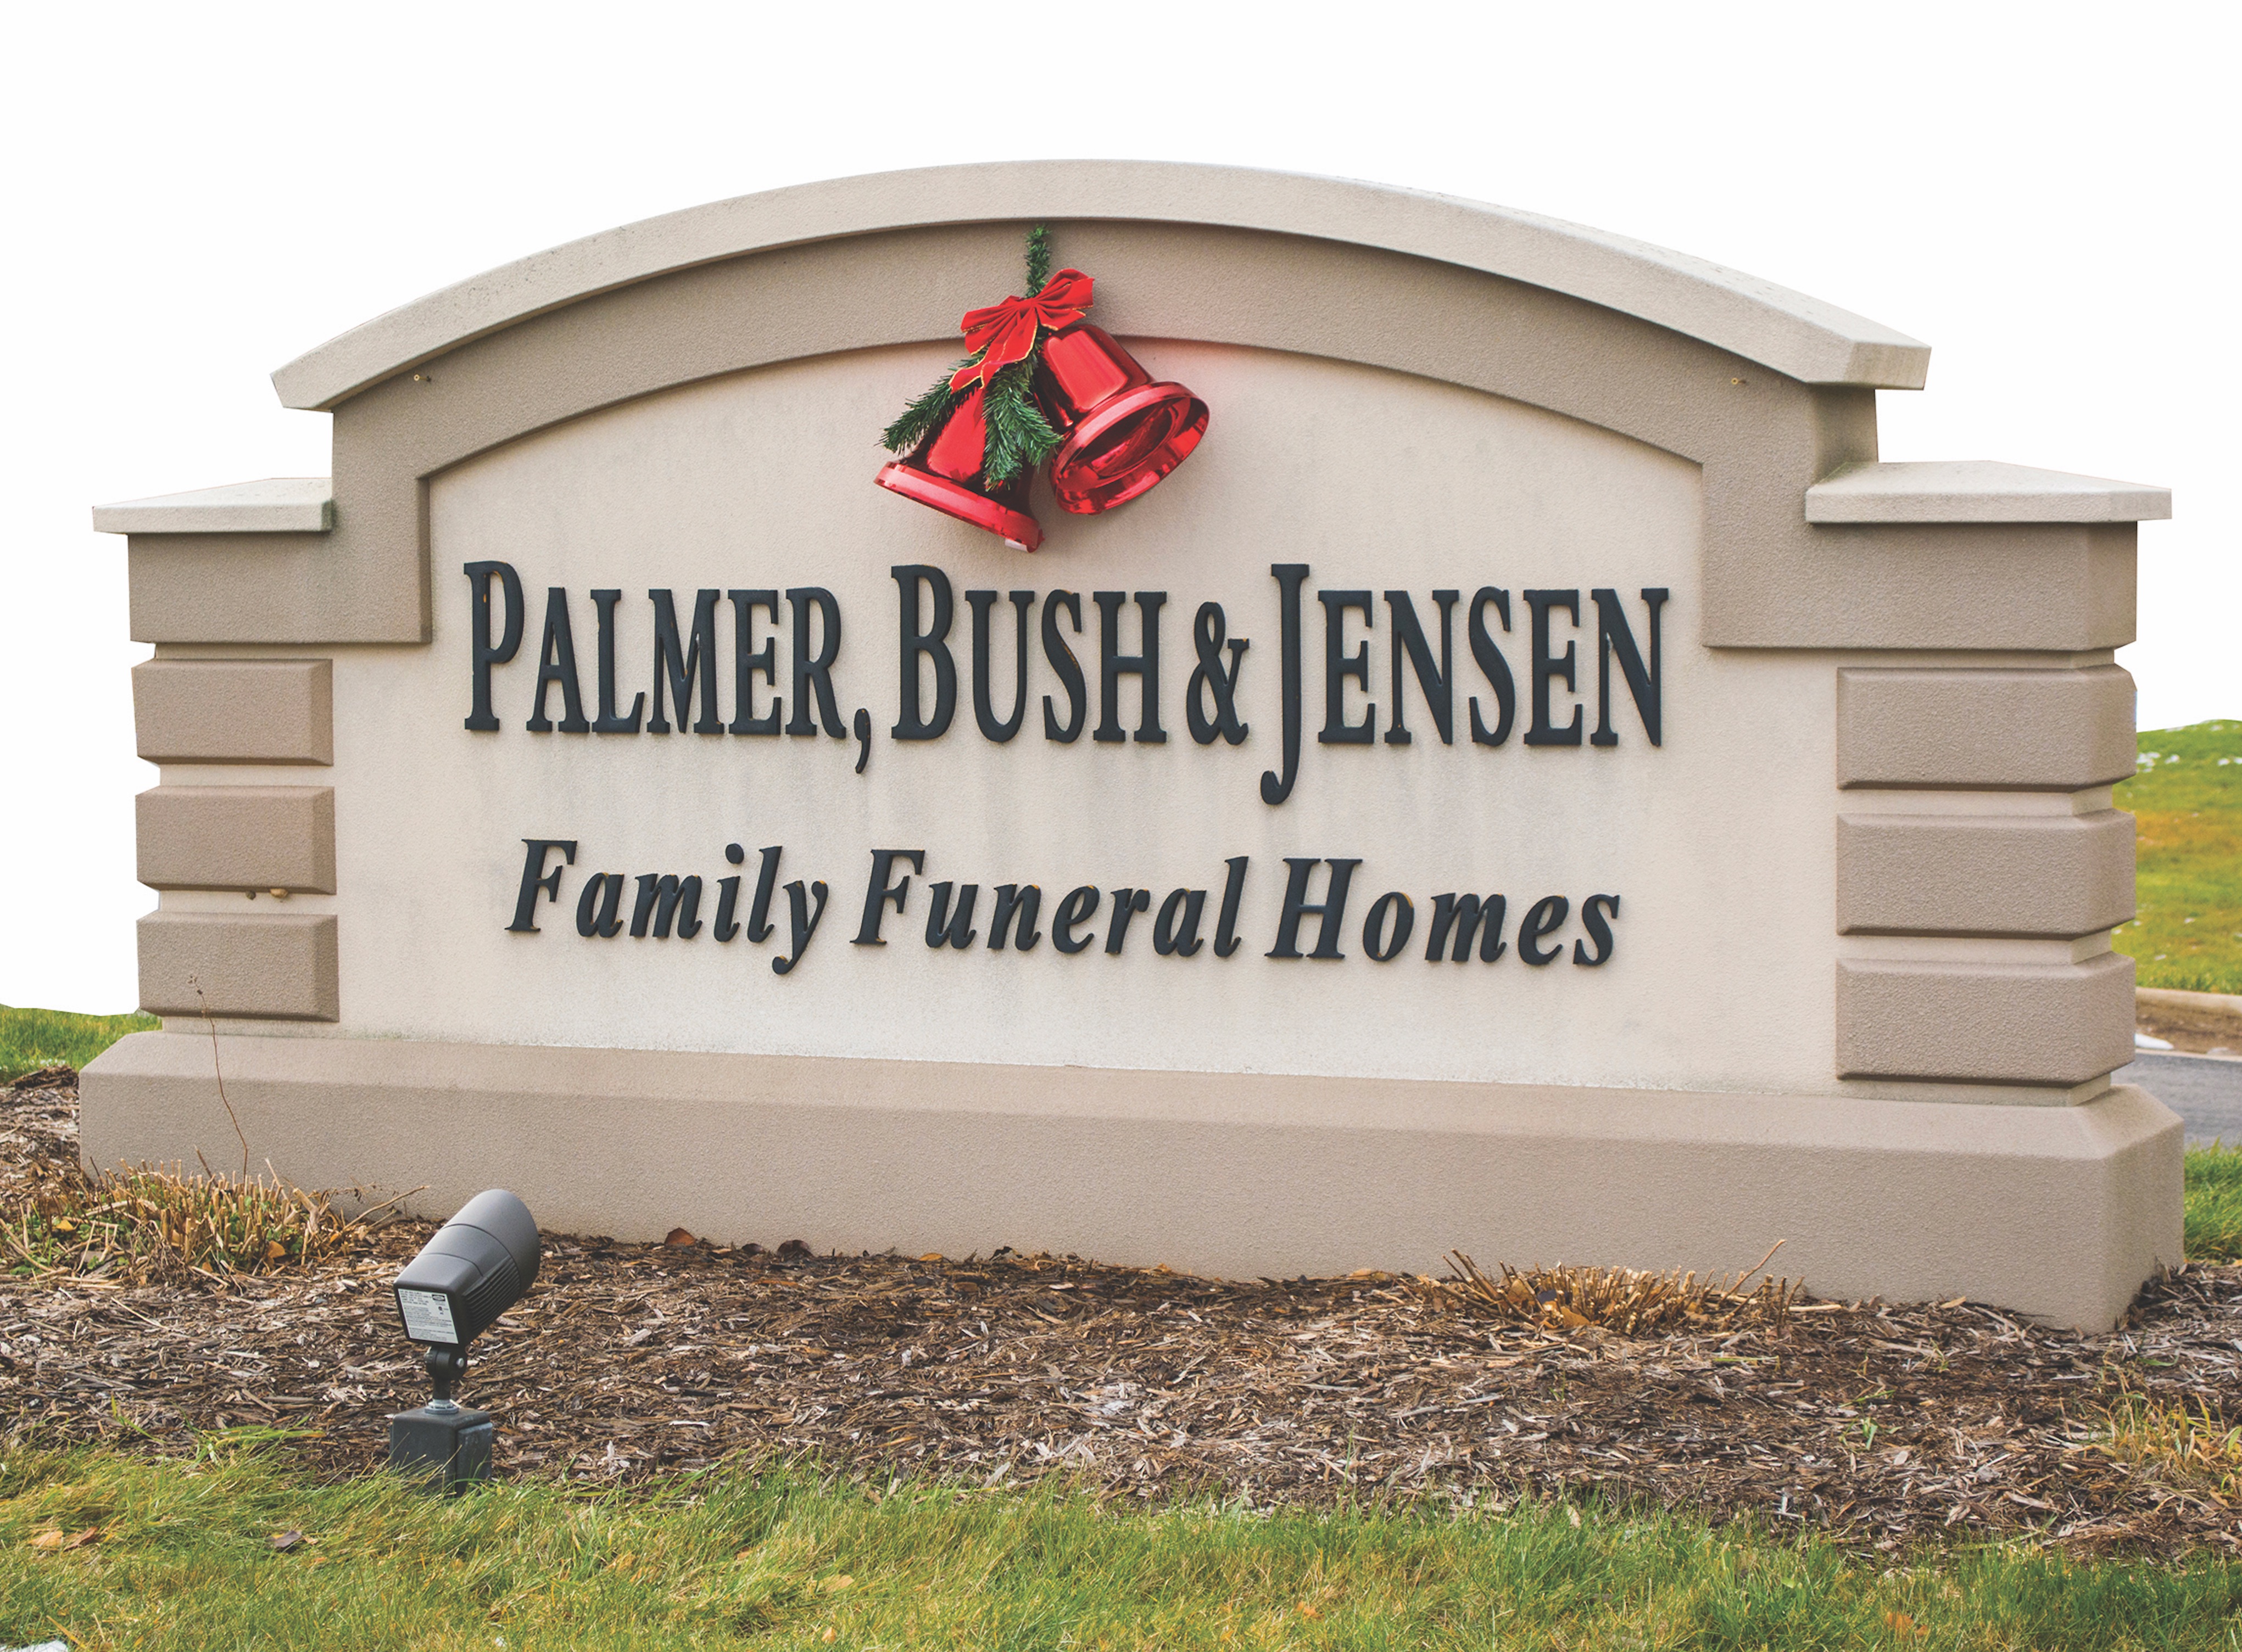 Palmer, Bush & Jensen Funeral Homes